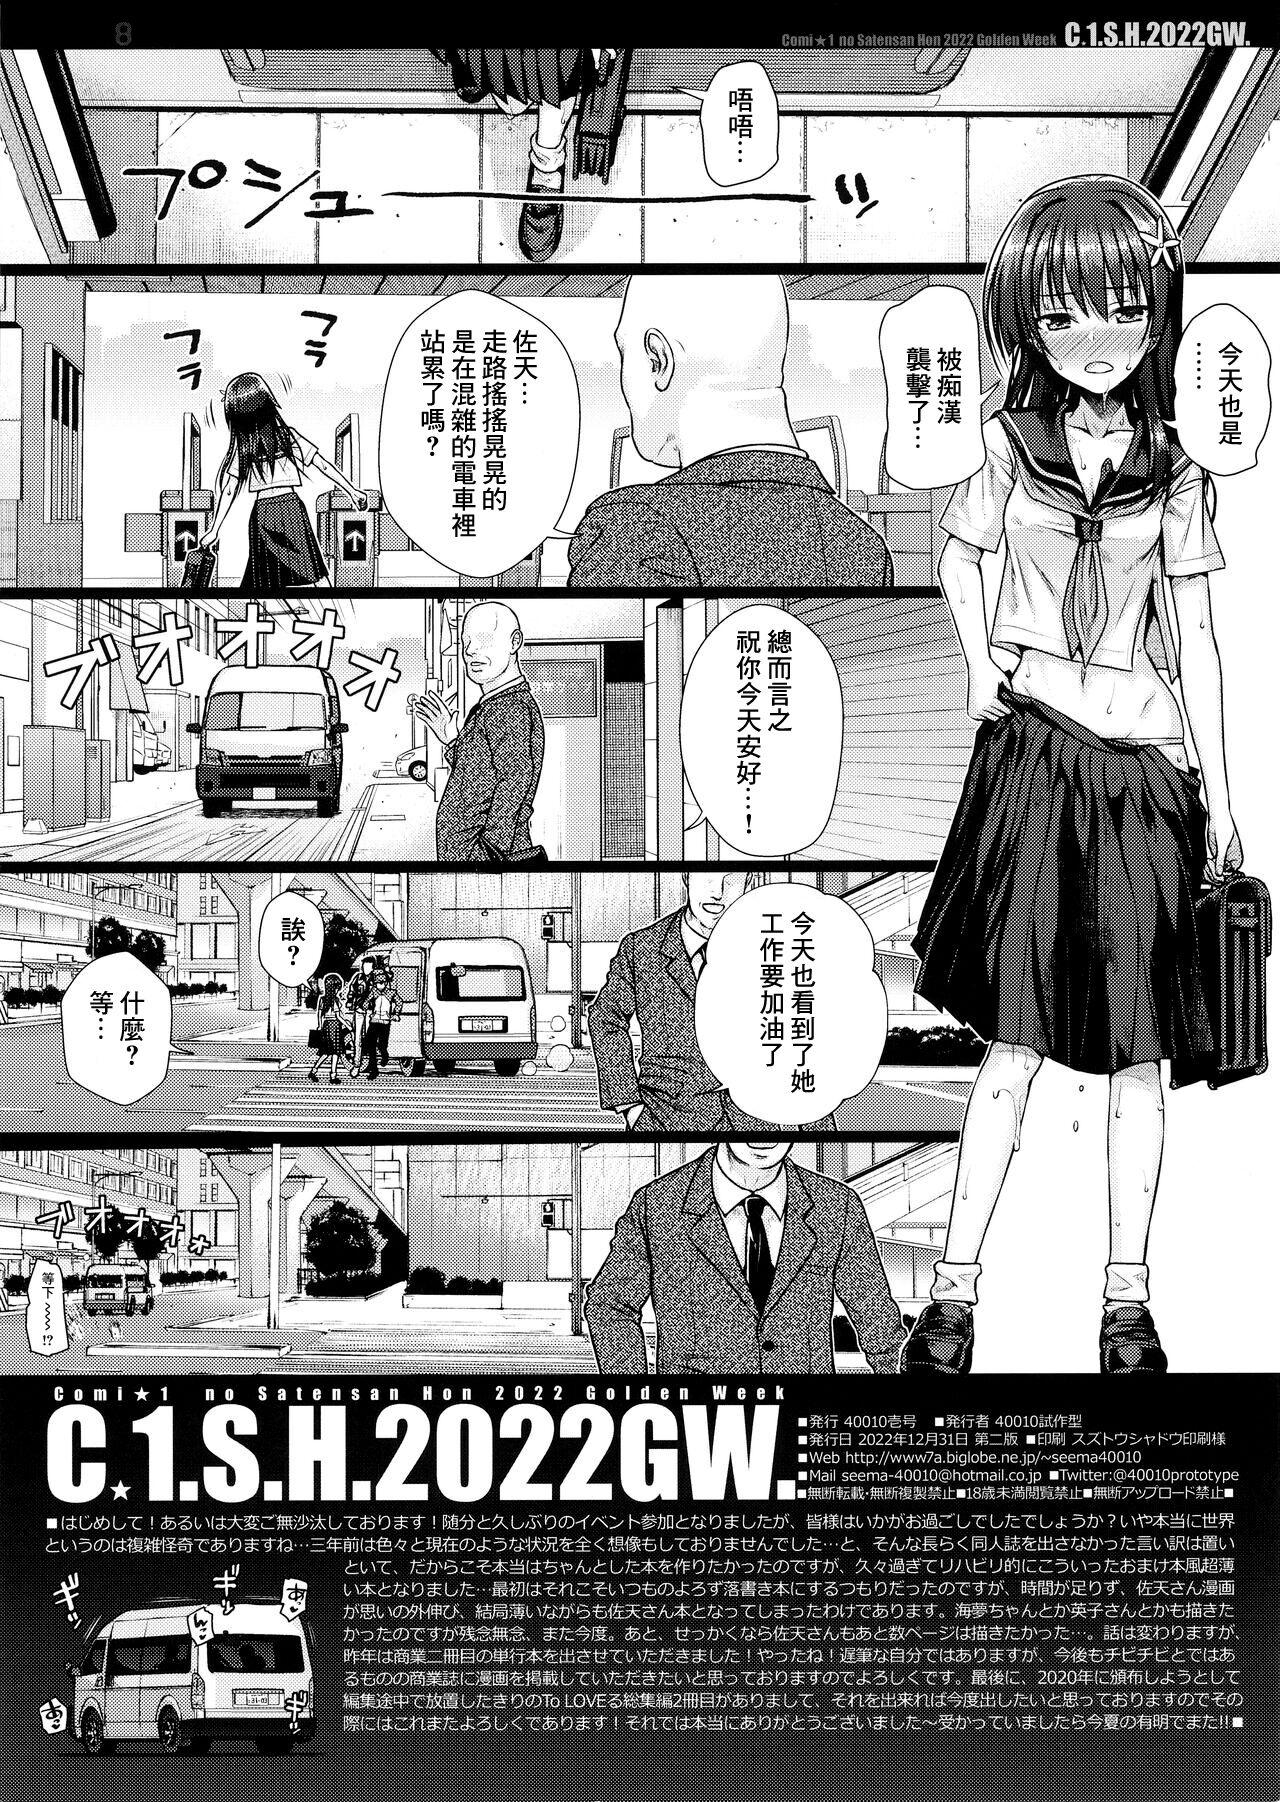 C☆1.S.H.2022GW. 7